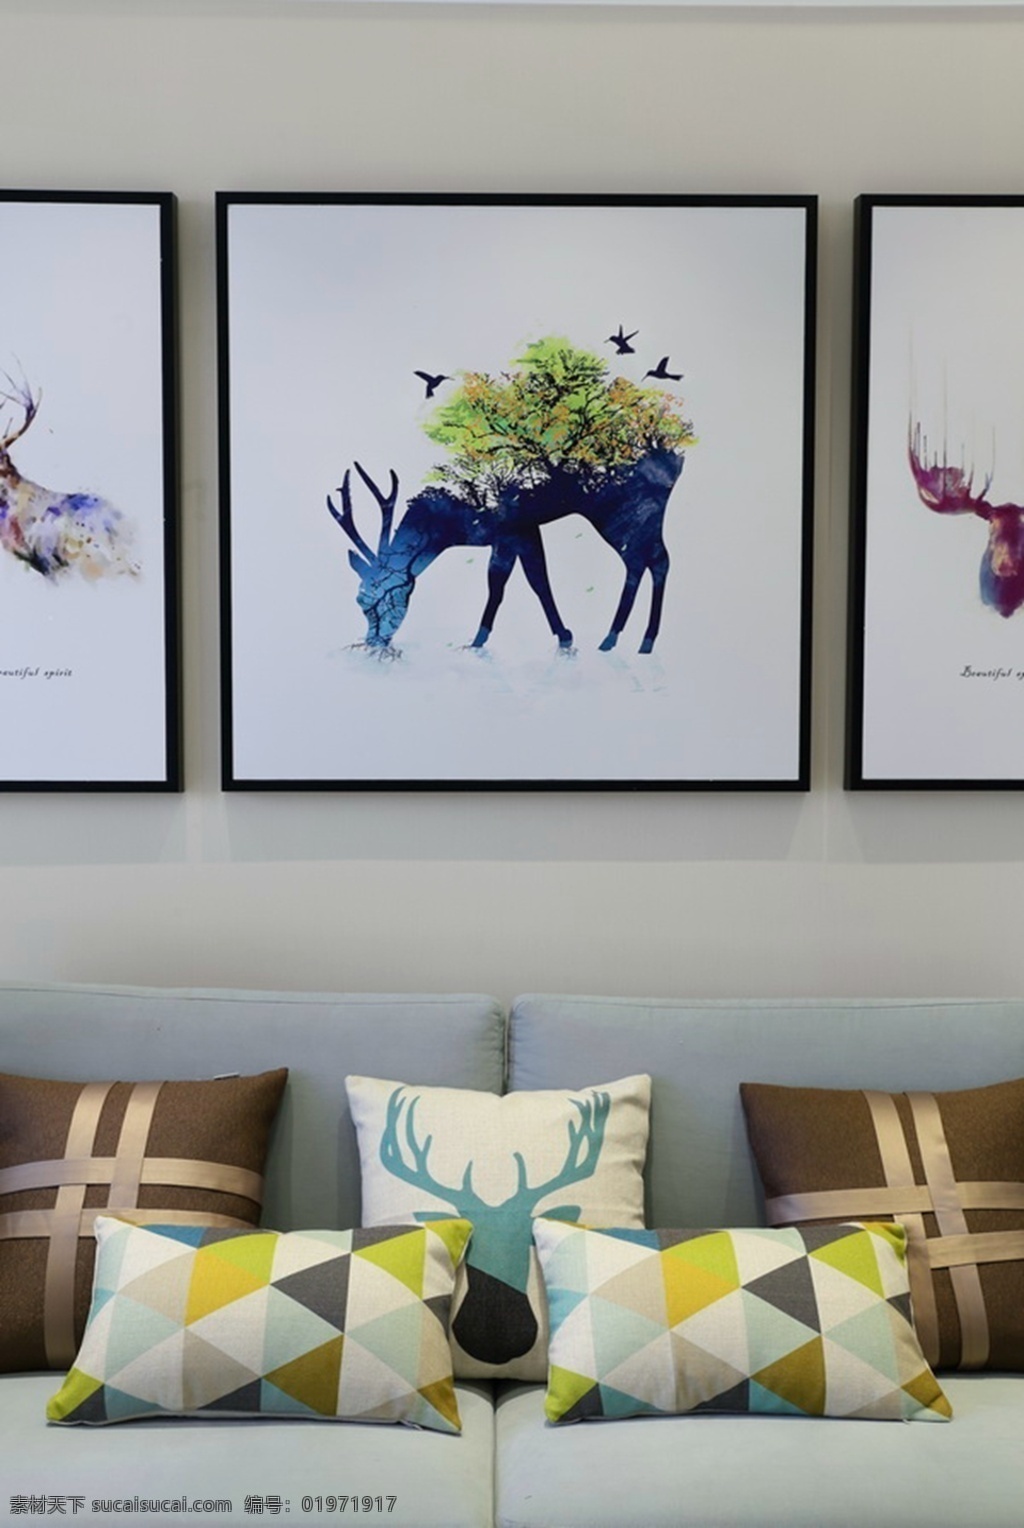 现代 时尚 客厅 灰色 沙发 室内装修 效果图 客厅装修 小鹿挂画 灰色沙发 褐色抱枕